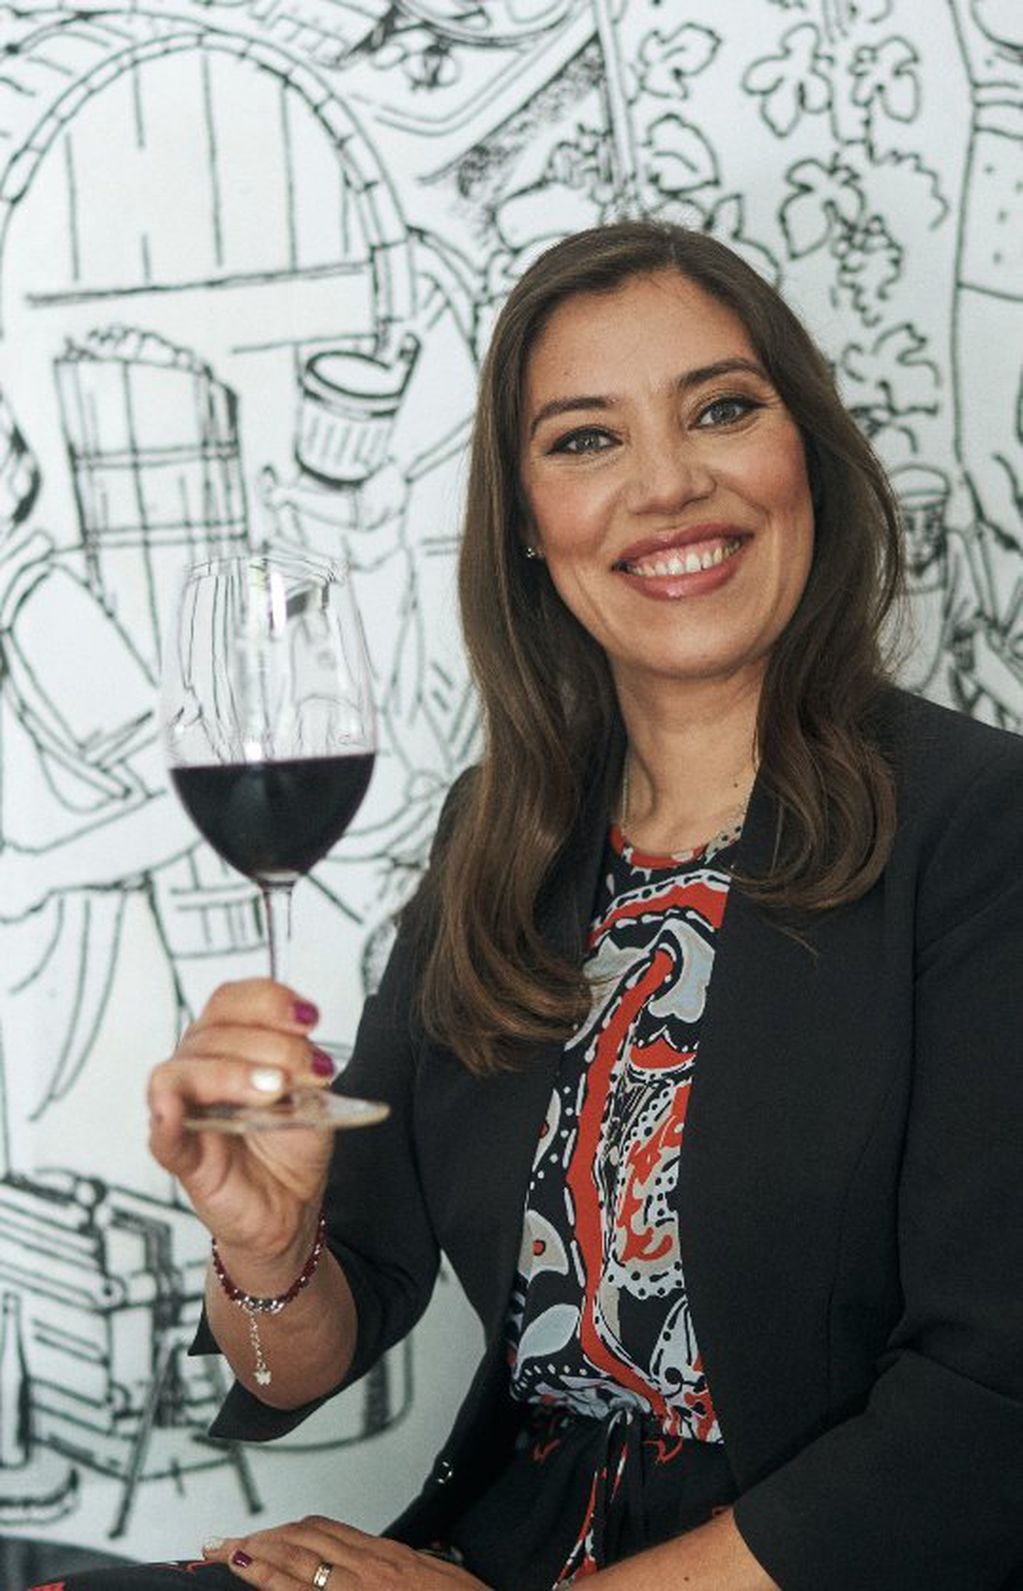 Marisol de la Fuente, sommelier de vinos. - Instagram